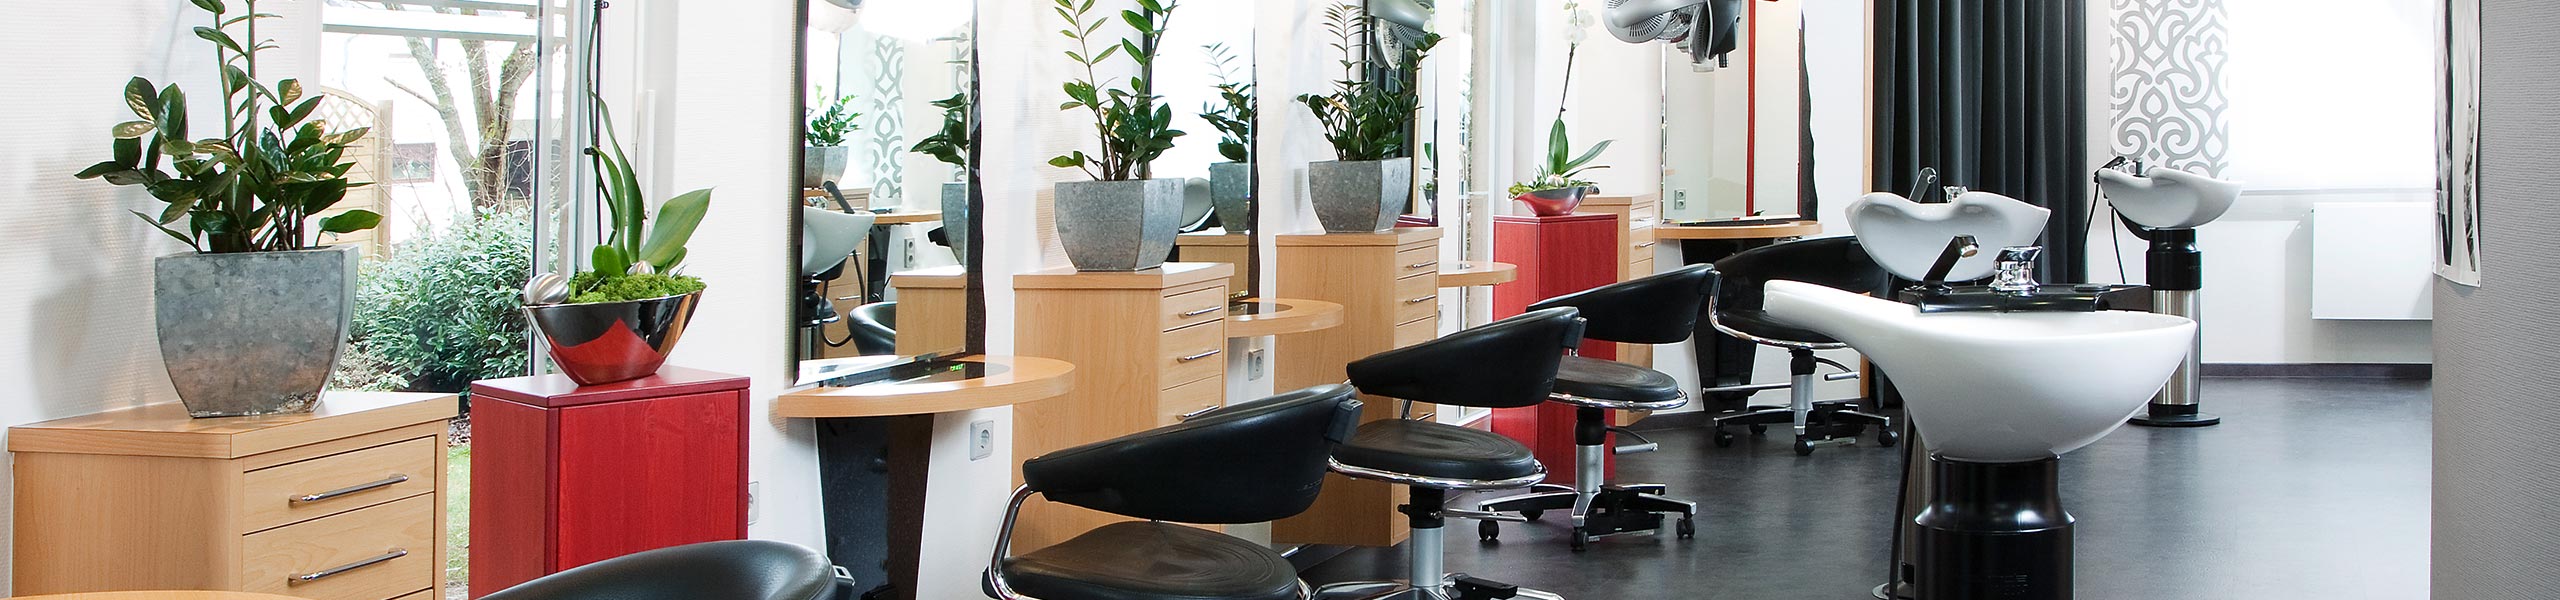 Über den Friseur-Salon Gossenberger in Buchen - Hair & Beauty Gossenberger